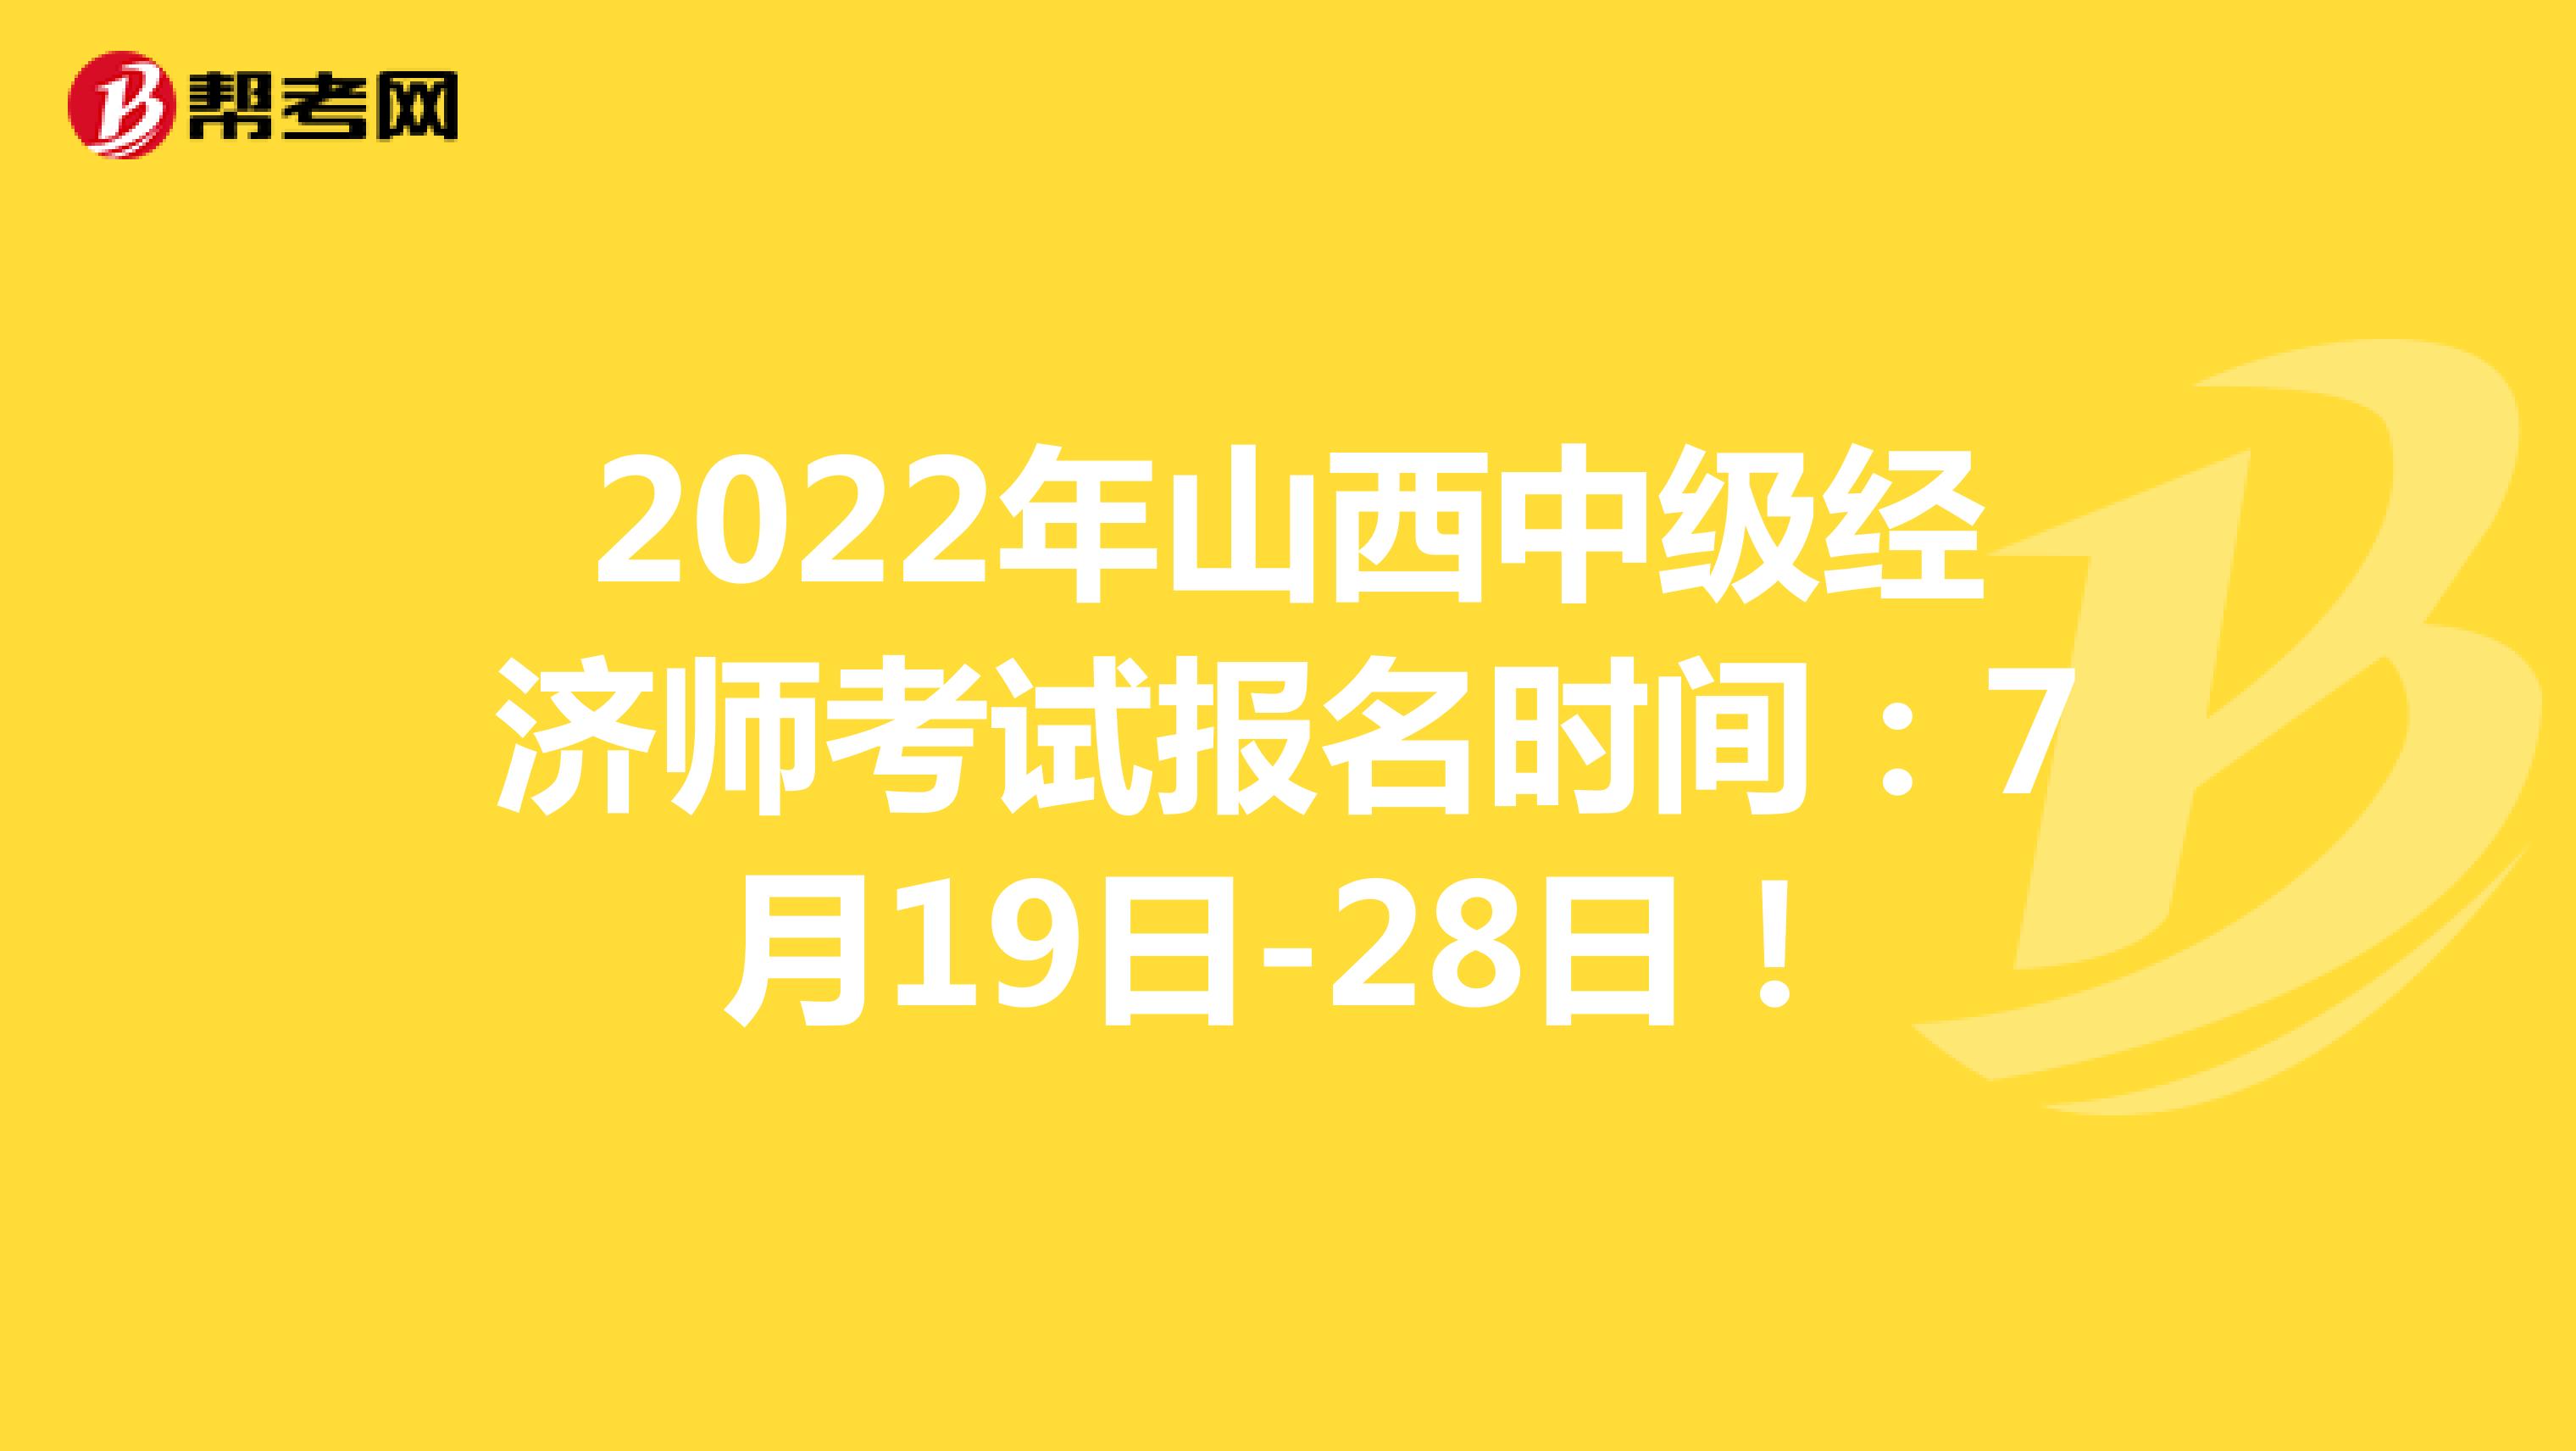 2022年山西中級經濟師考試報名時間：7月19日-28日！